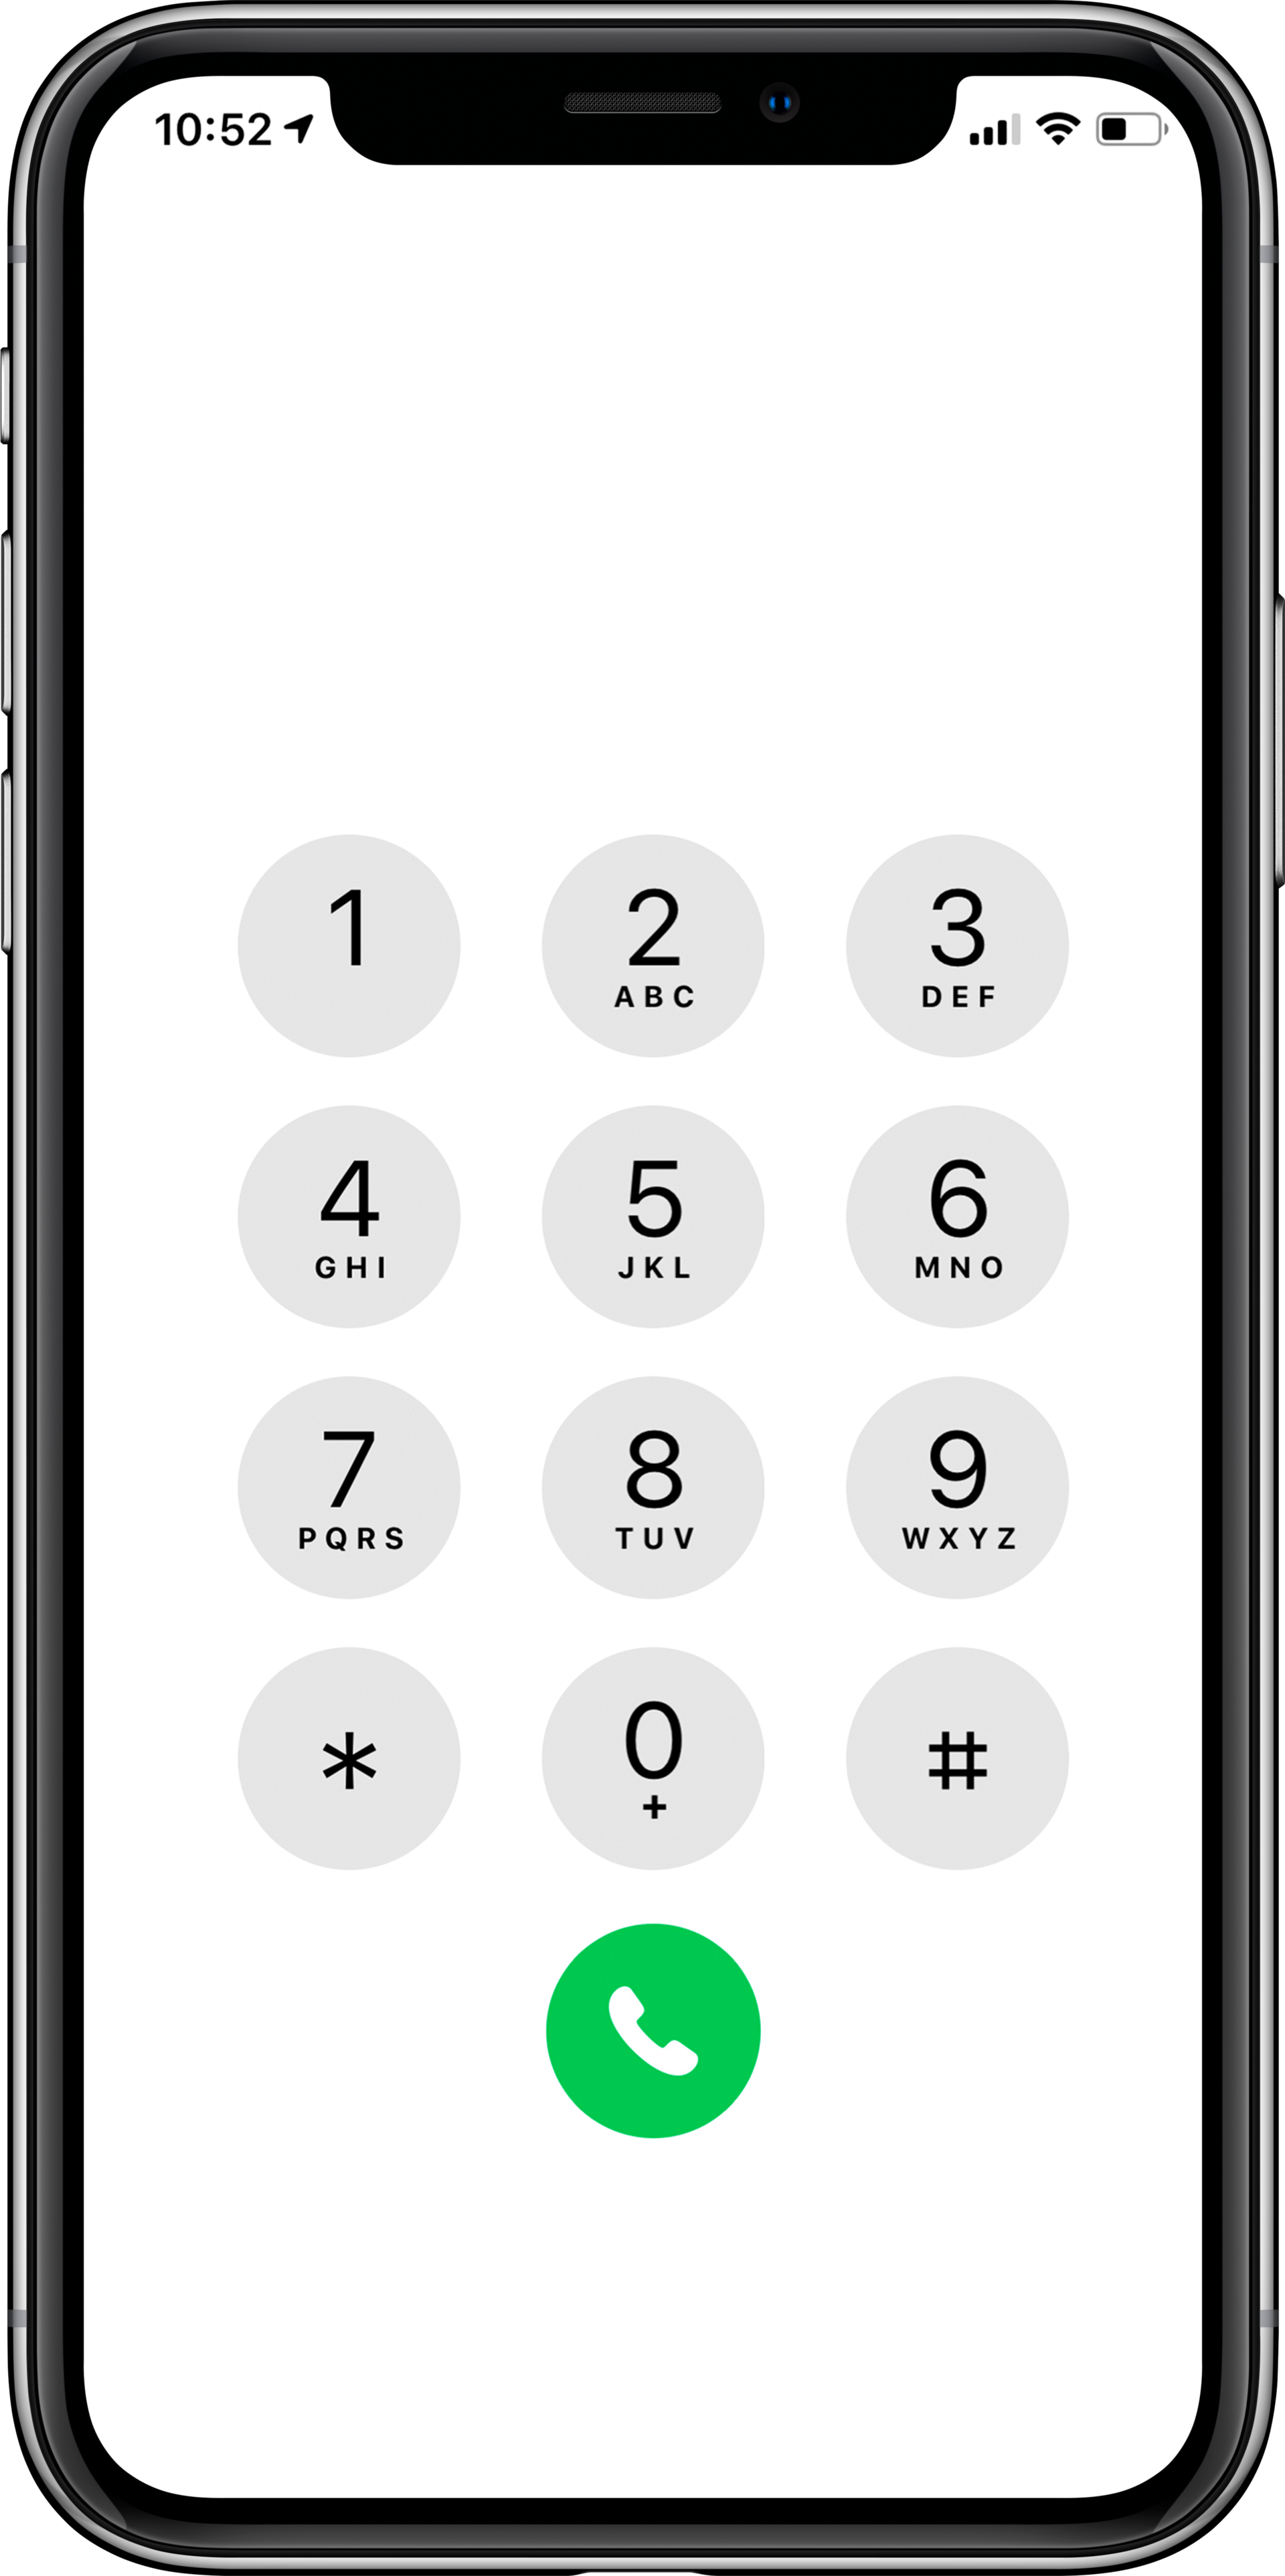 Iphone набор номера. Экран телефона набор номера. Набор номера на кнопочном телефоне. Кнопки для набора номера айфон. Iphone pro на звонок